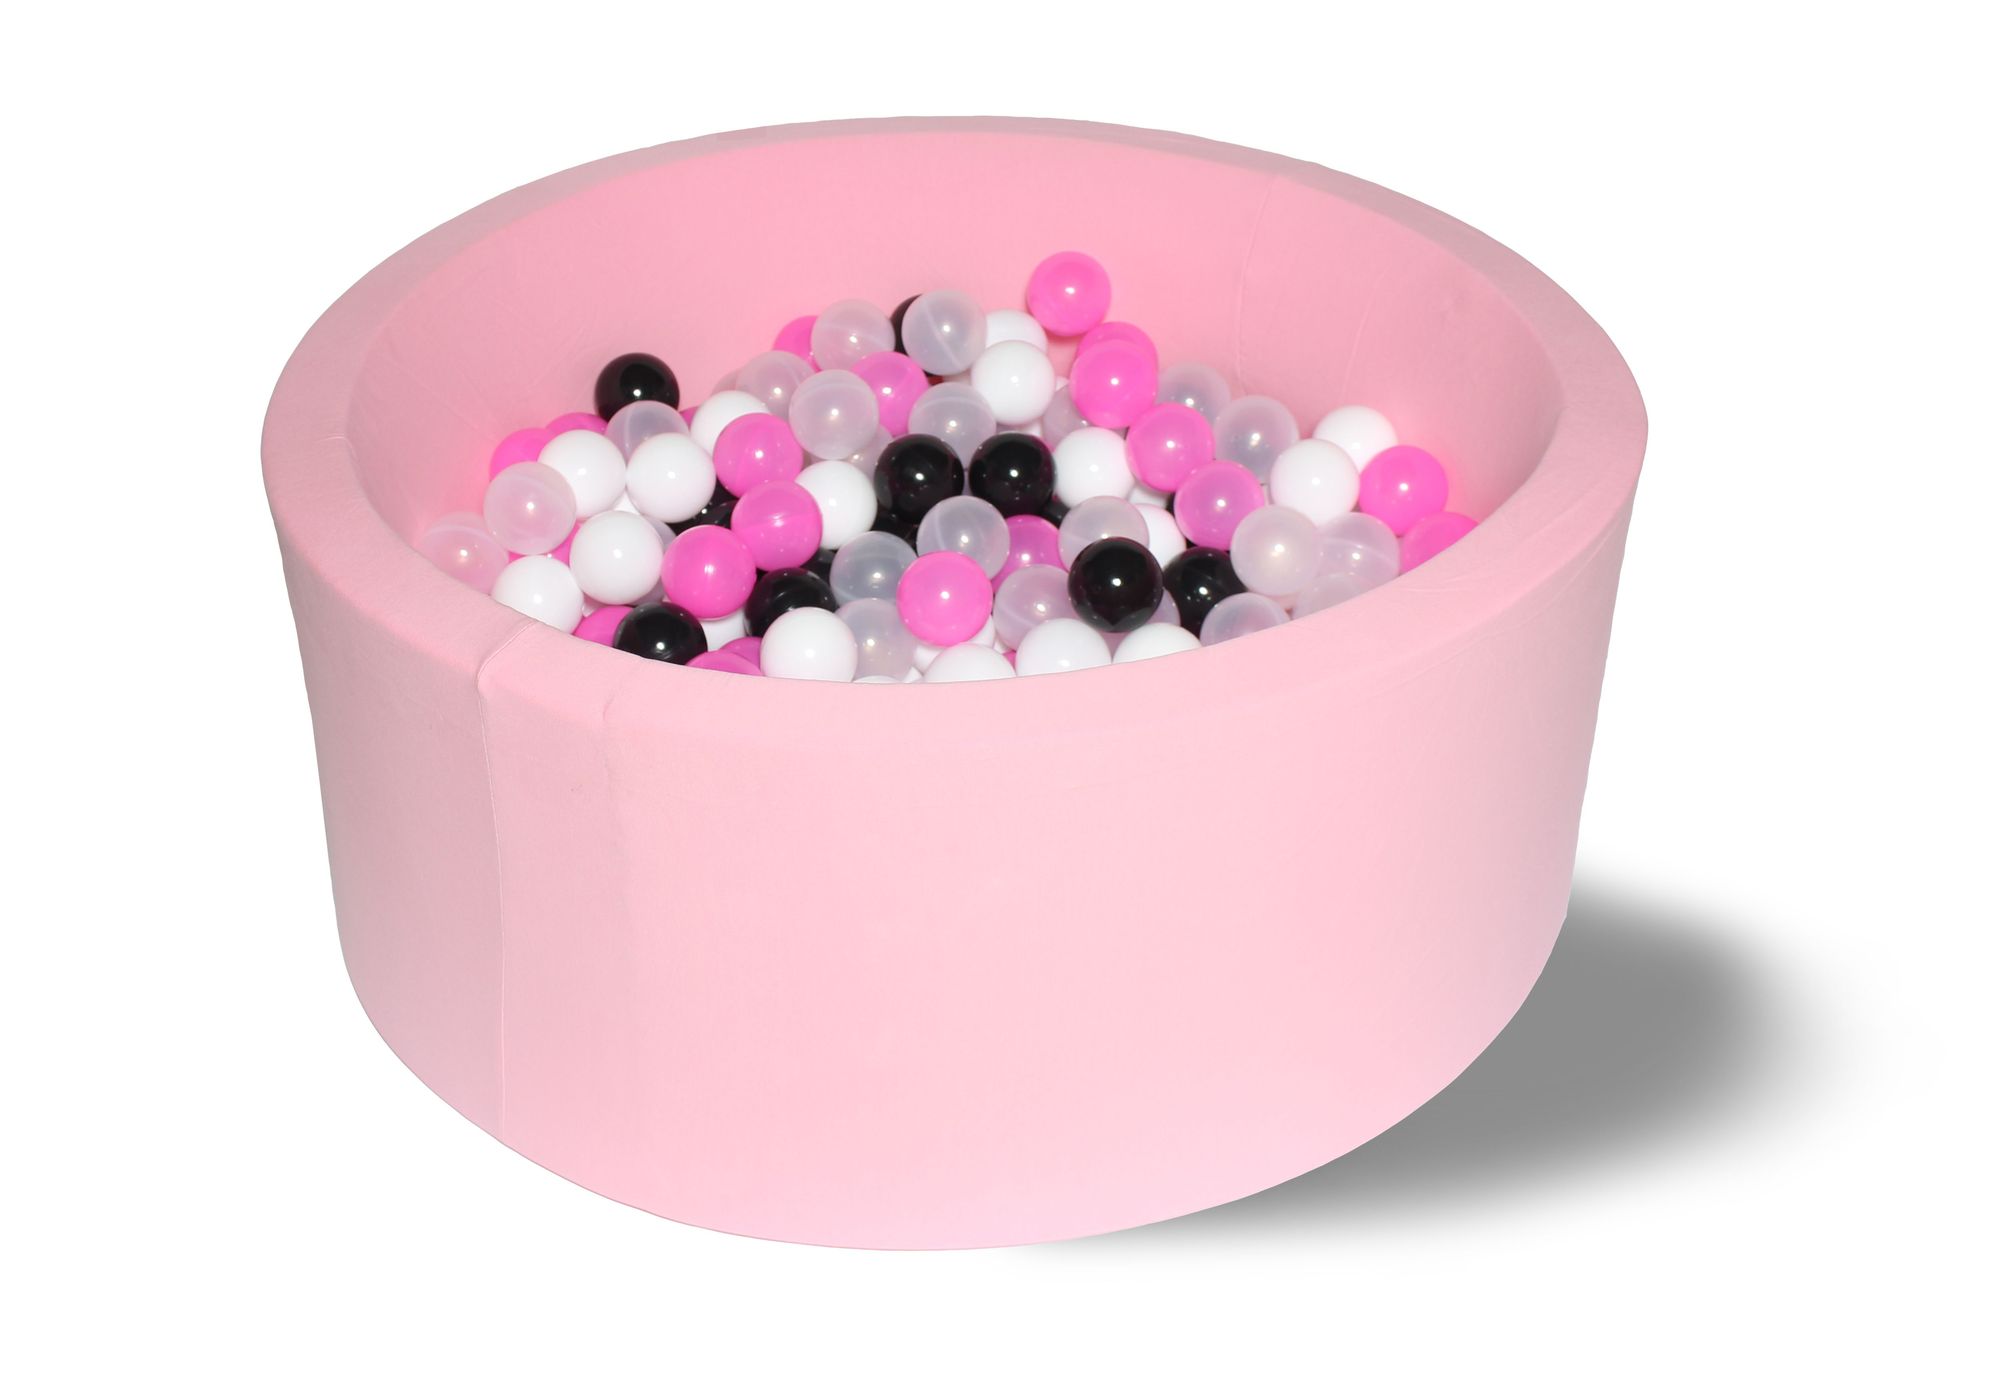 фото Сухой бассейн розовая пантера 40см с 200 шарами: розов, бел, черный, прозрачный hotenok